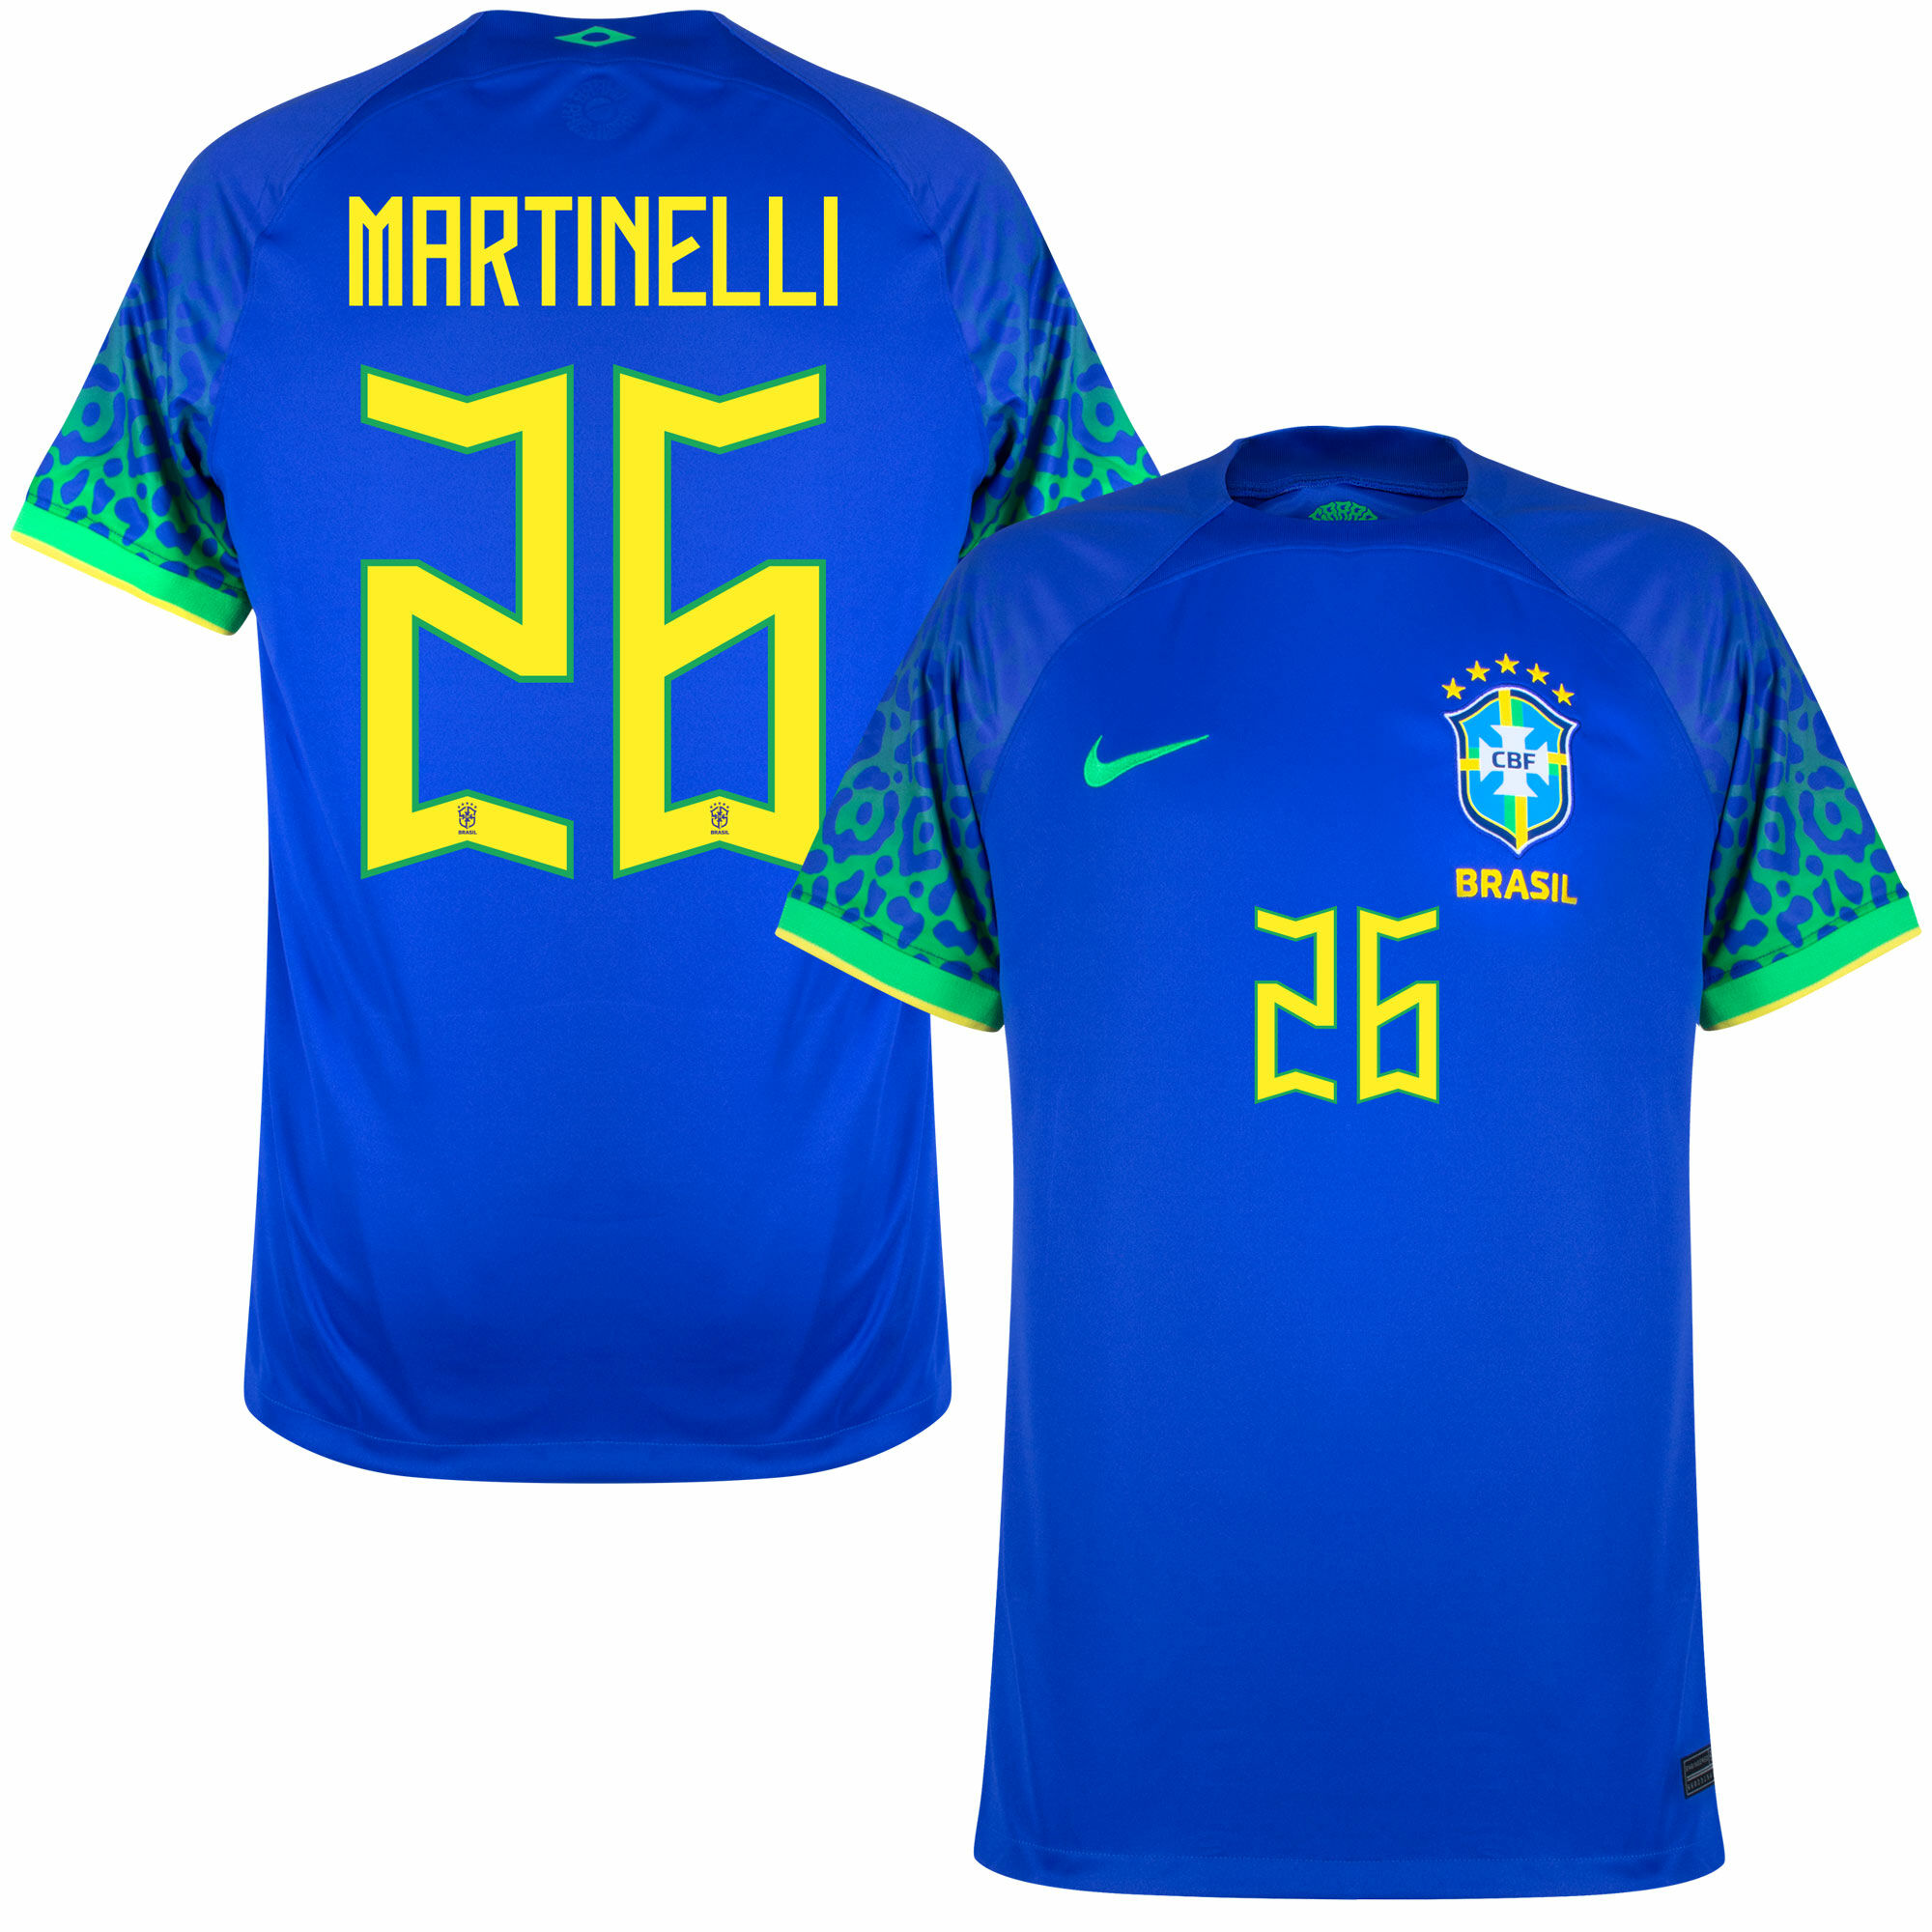 Brazílie - Dres fotbalový - Gabriel Martinelli, oficiální potisk, sezóna 2022/23, číslo 26, modrý, venkovní